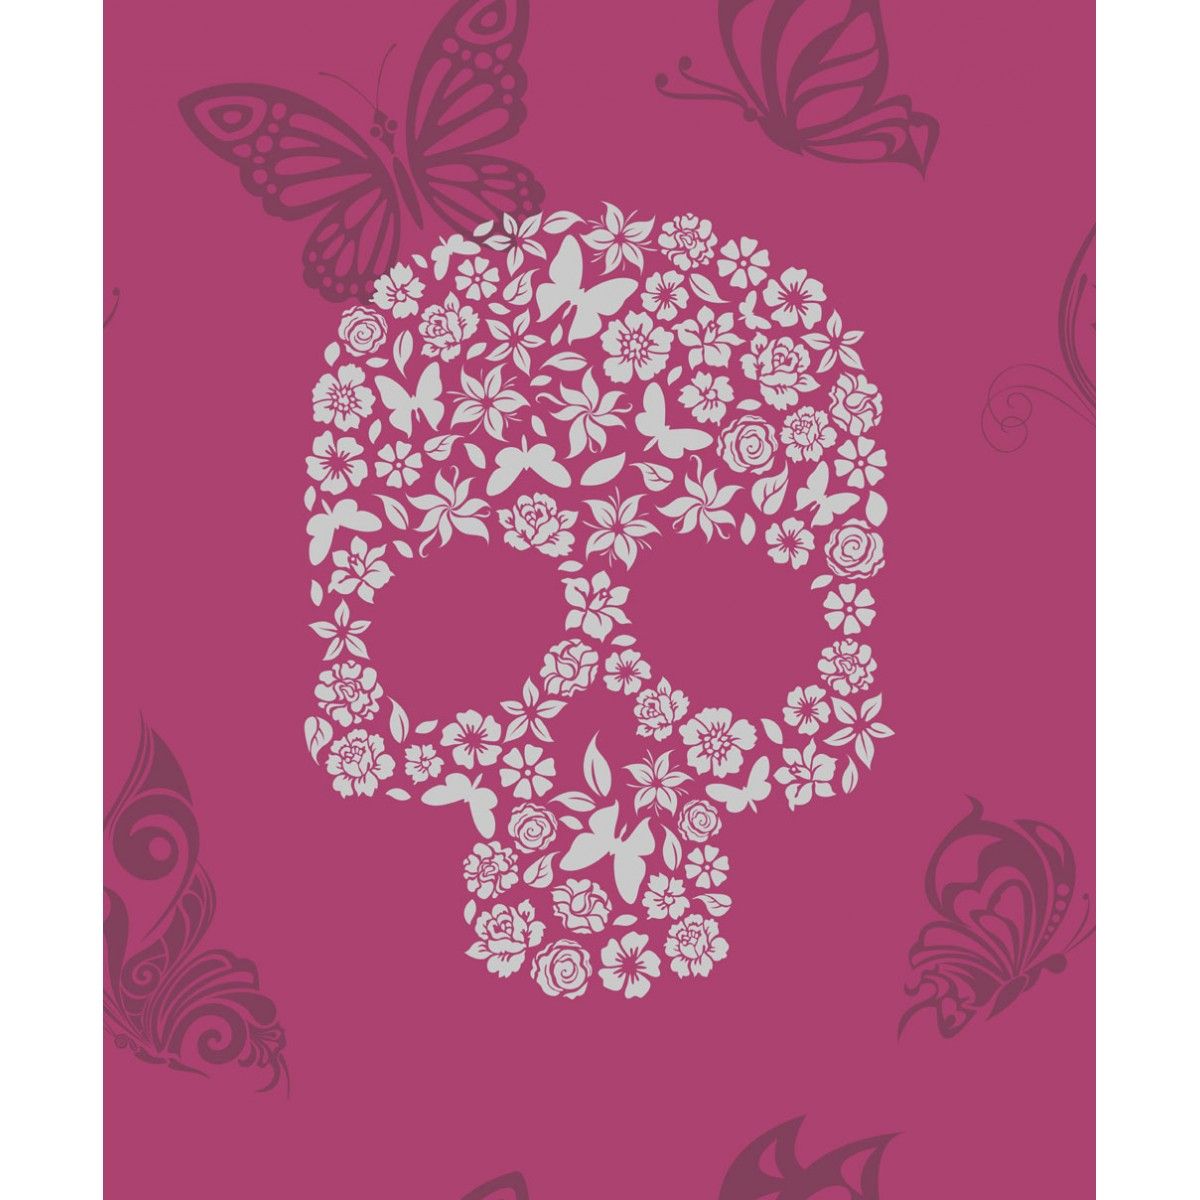 Pink Skull Wallpaper